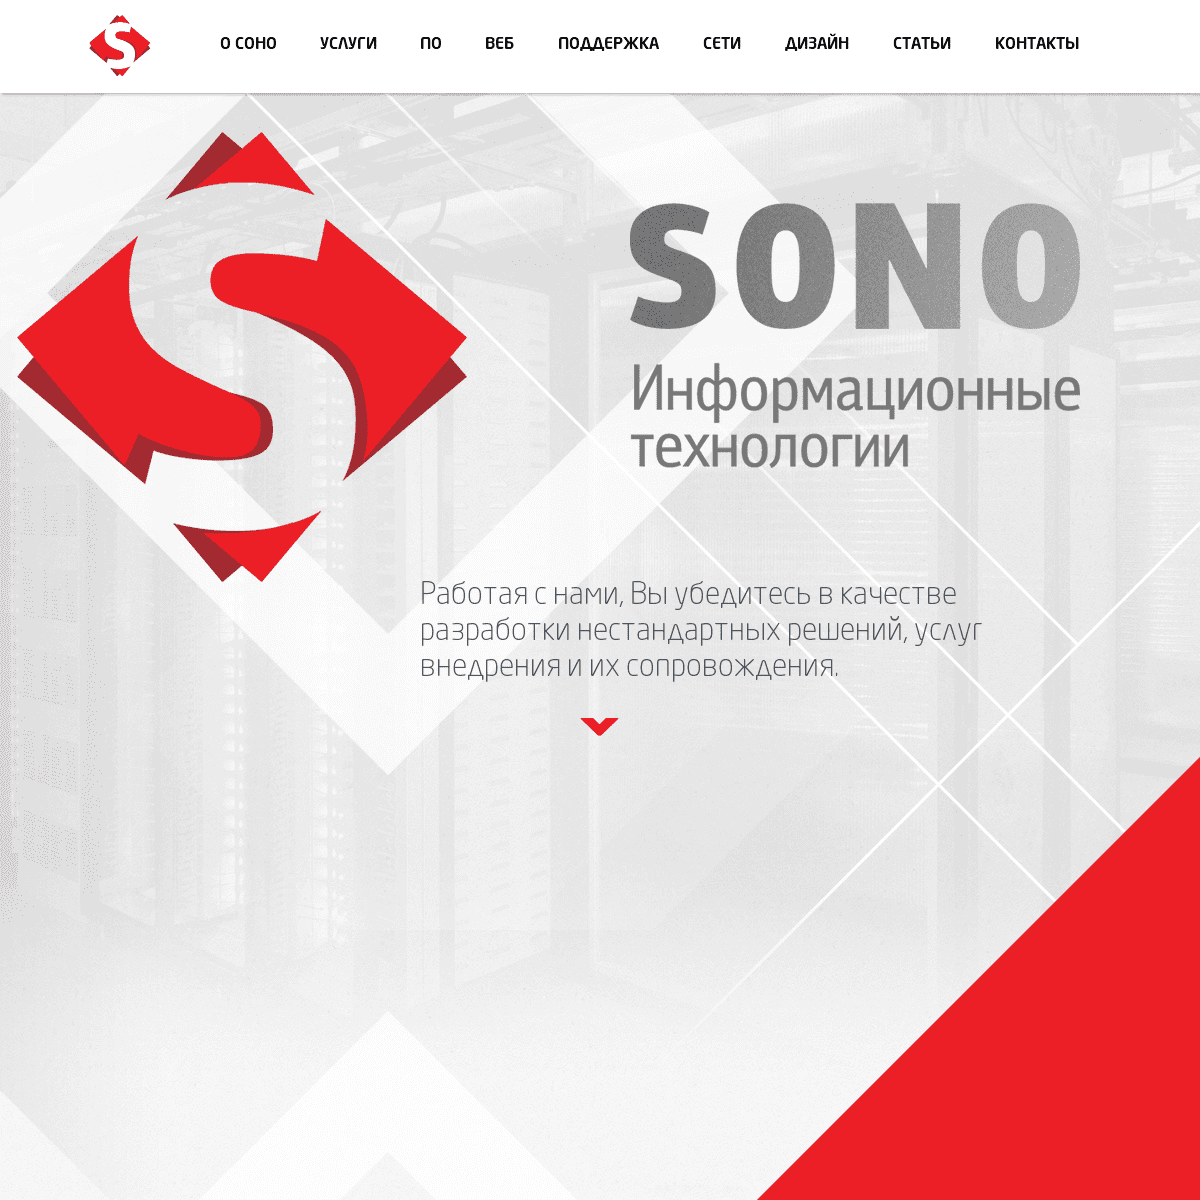 SONO-Разработка,внедрение и обслуживание высокотехнологичных IT систем